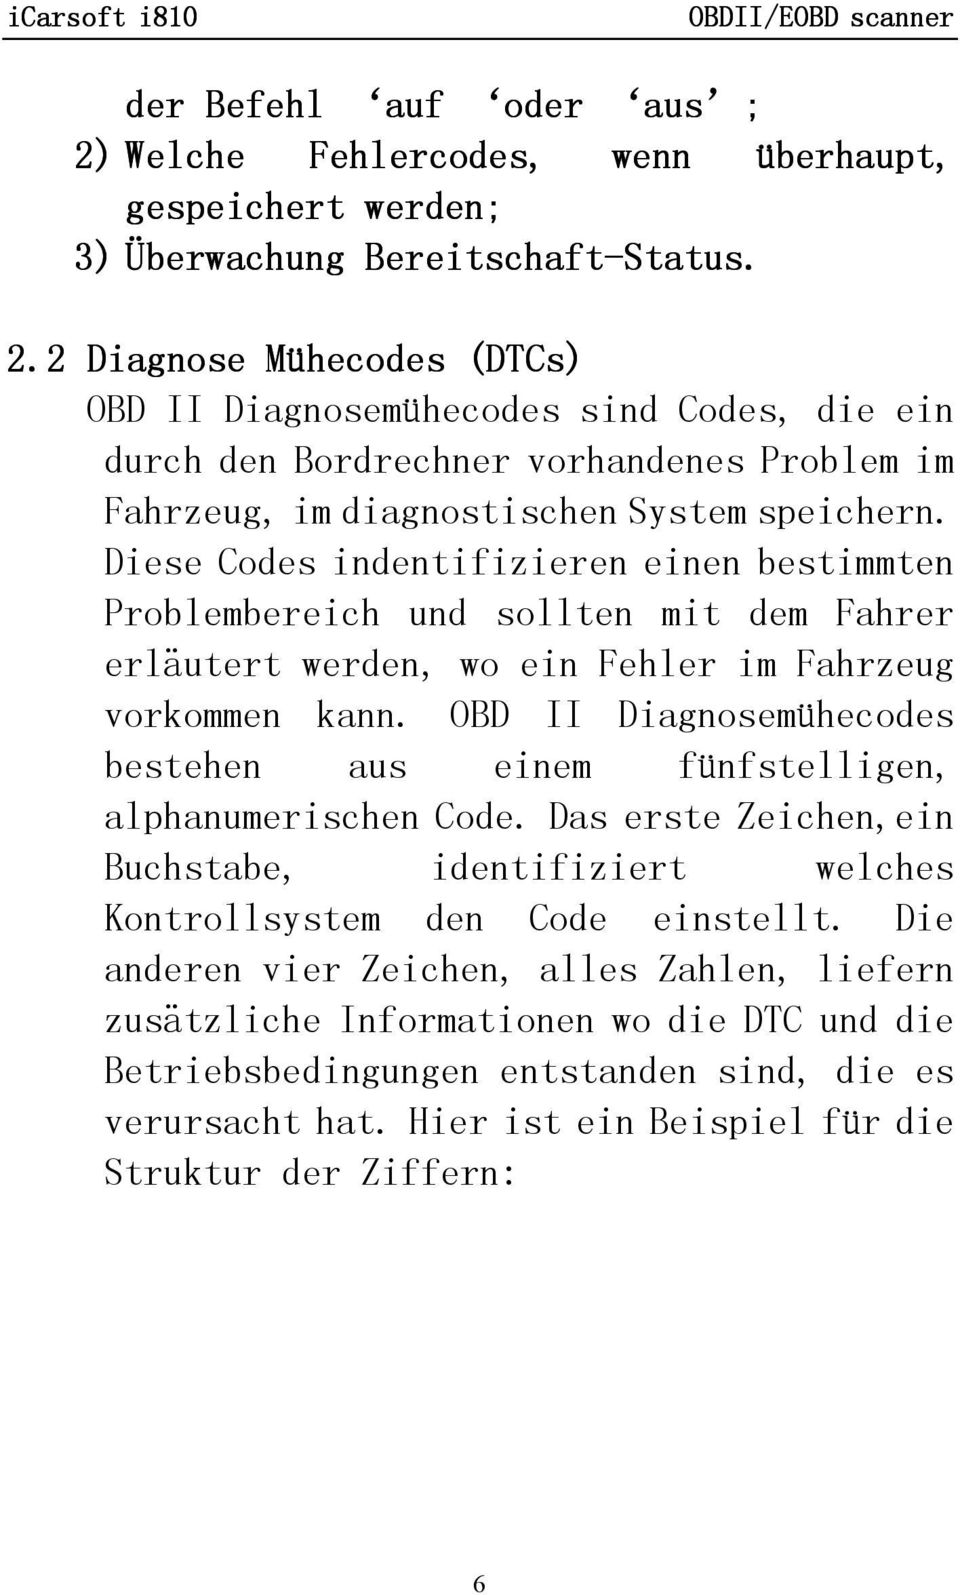 OBD II Diagnosemühecodes bestehen aus einem fünfstelligen, alphanumerischen Code. Das erste Zeichen,ein Buchstabe, identifiziert welches Kontrollsystem den Code einstellt.